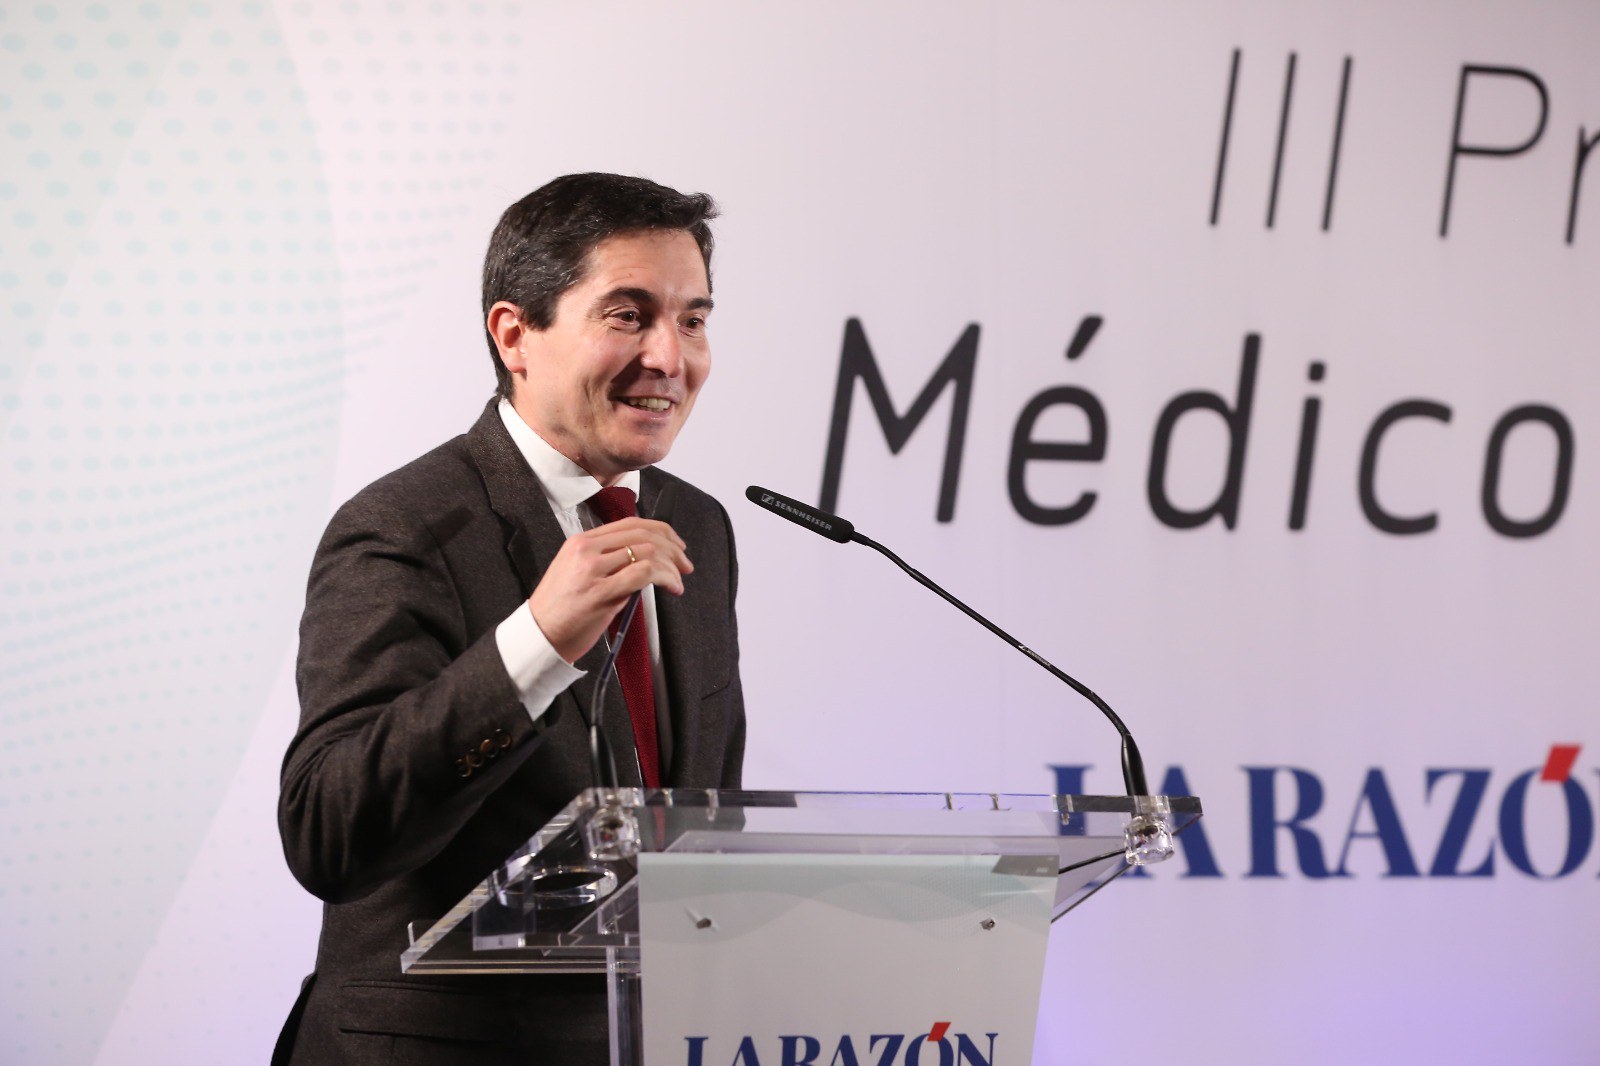 El Dr. Javier Mareque, coordinador de l’IOMA, ha rebut el premi Médicos del Año 2021 en la categoria de Cirurgia Maxil·lofacial